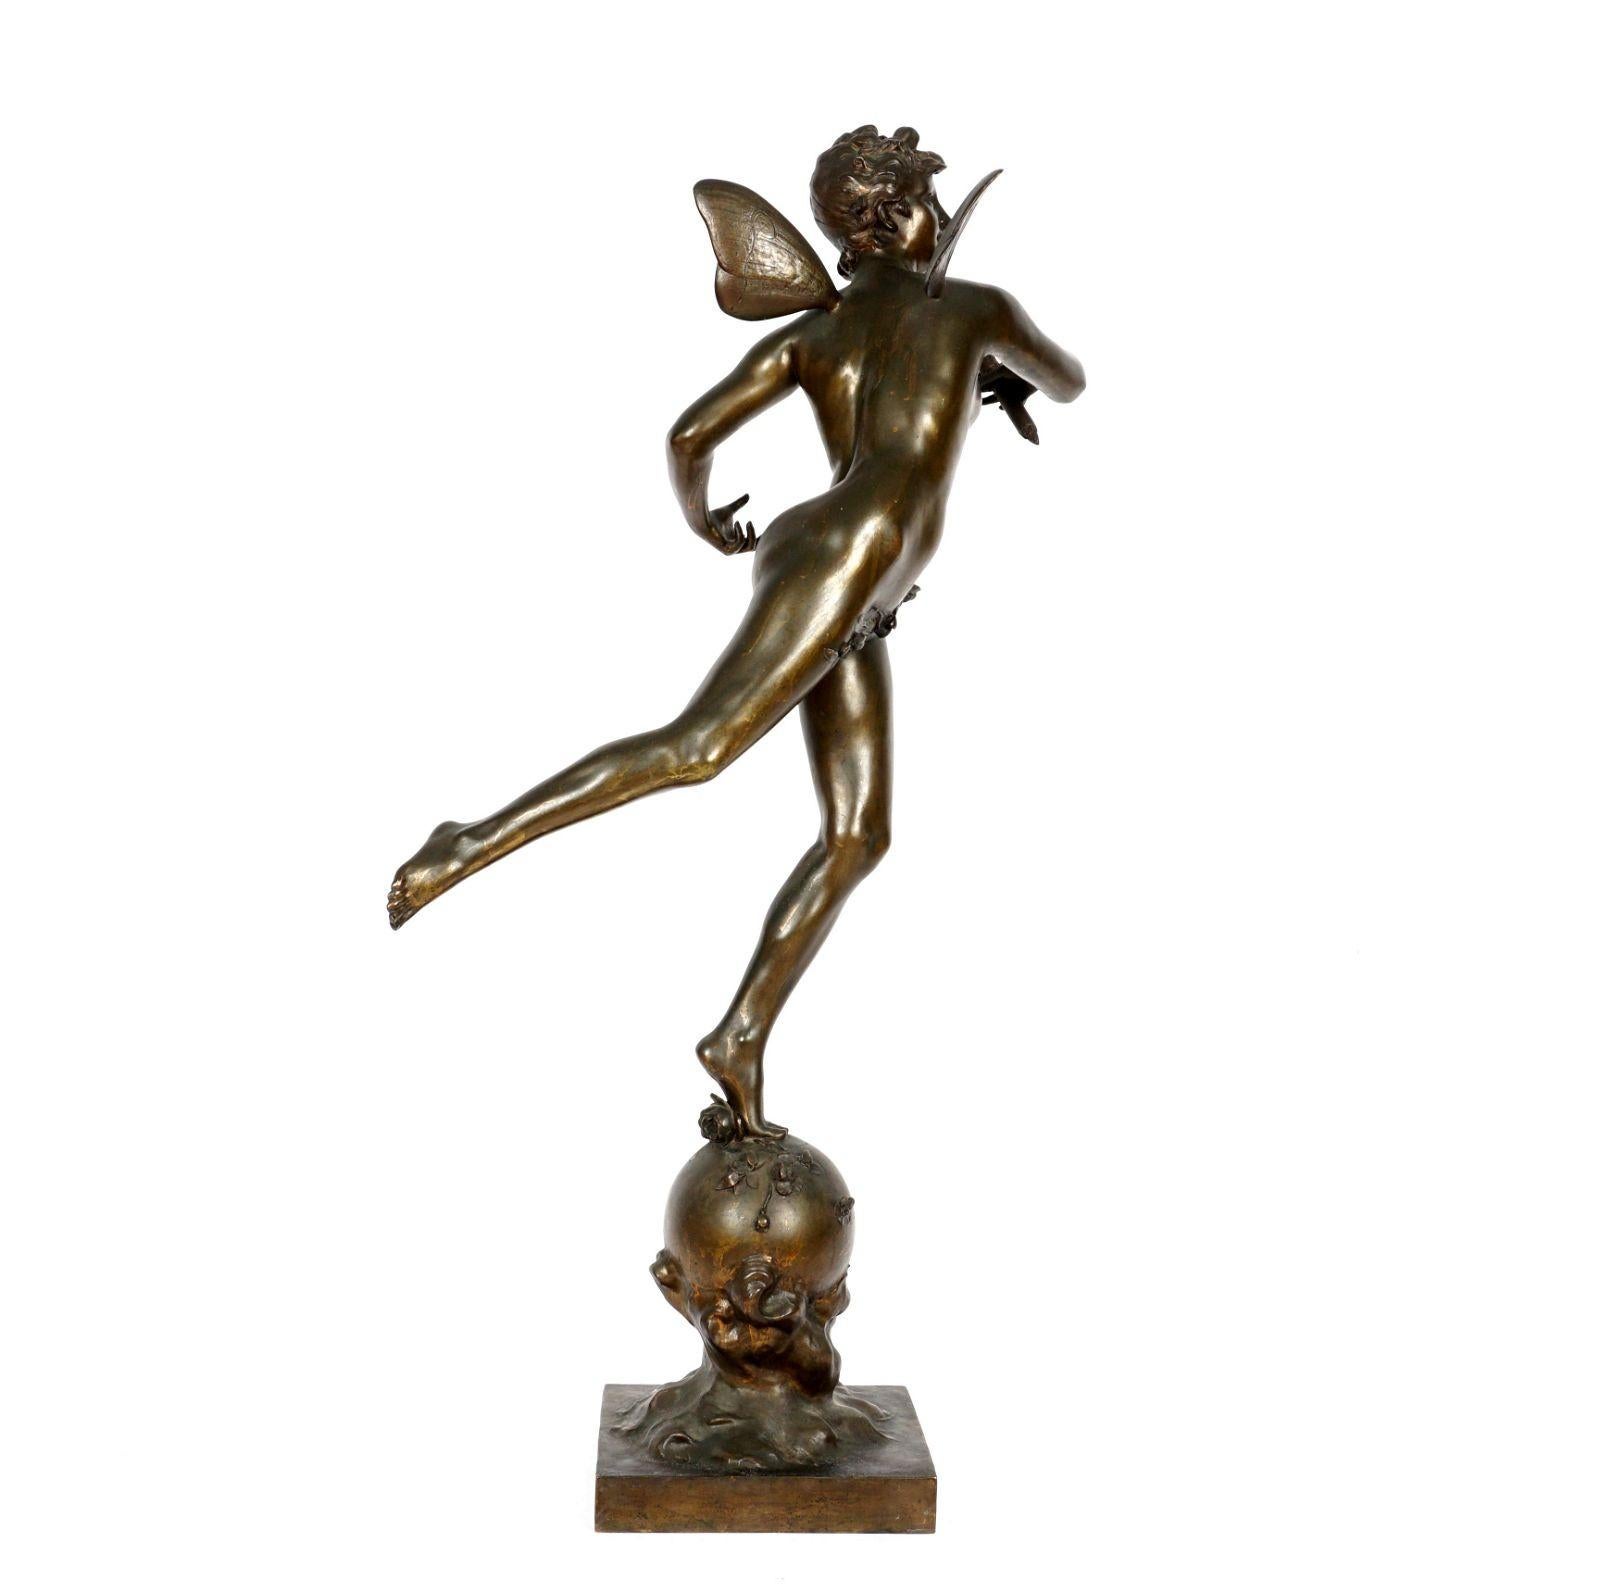 Grande sculpture en bronze patiné (41 pouces de haut) représentant une fée avec un sceptre debout sur un globe d'après le sculpteur français Michel Leonard Beguine (1855-1929).